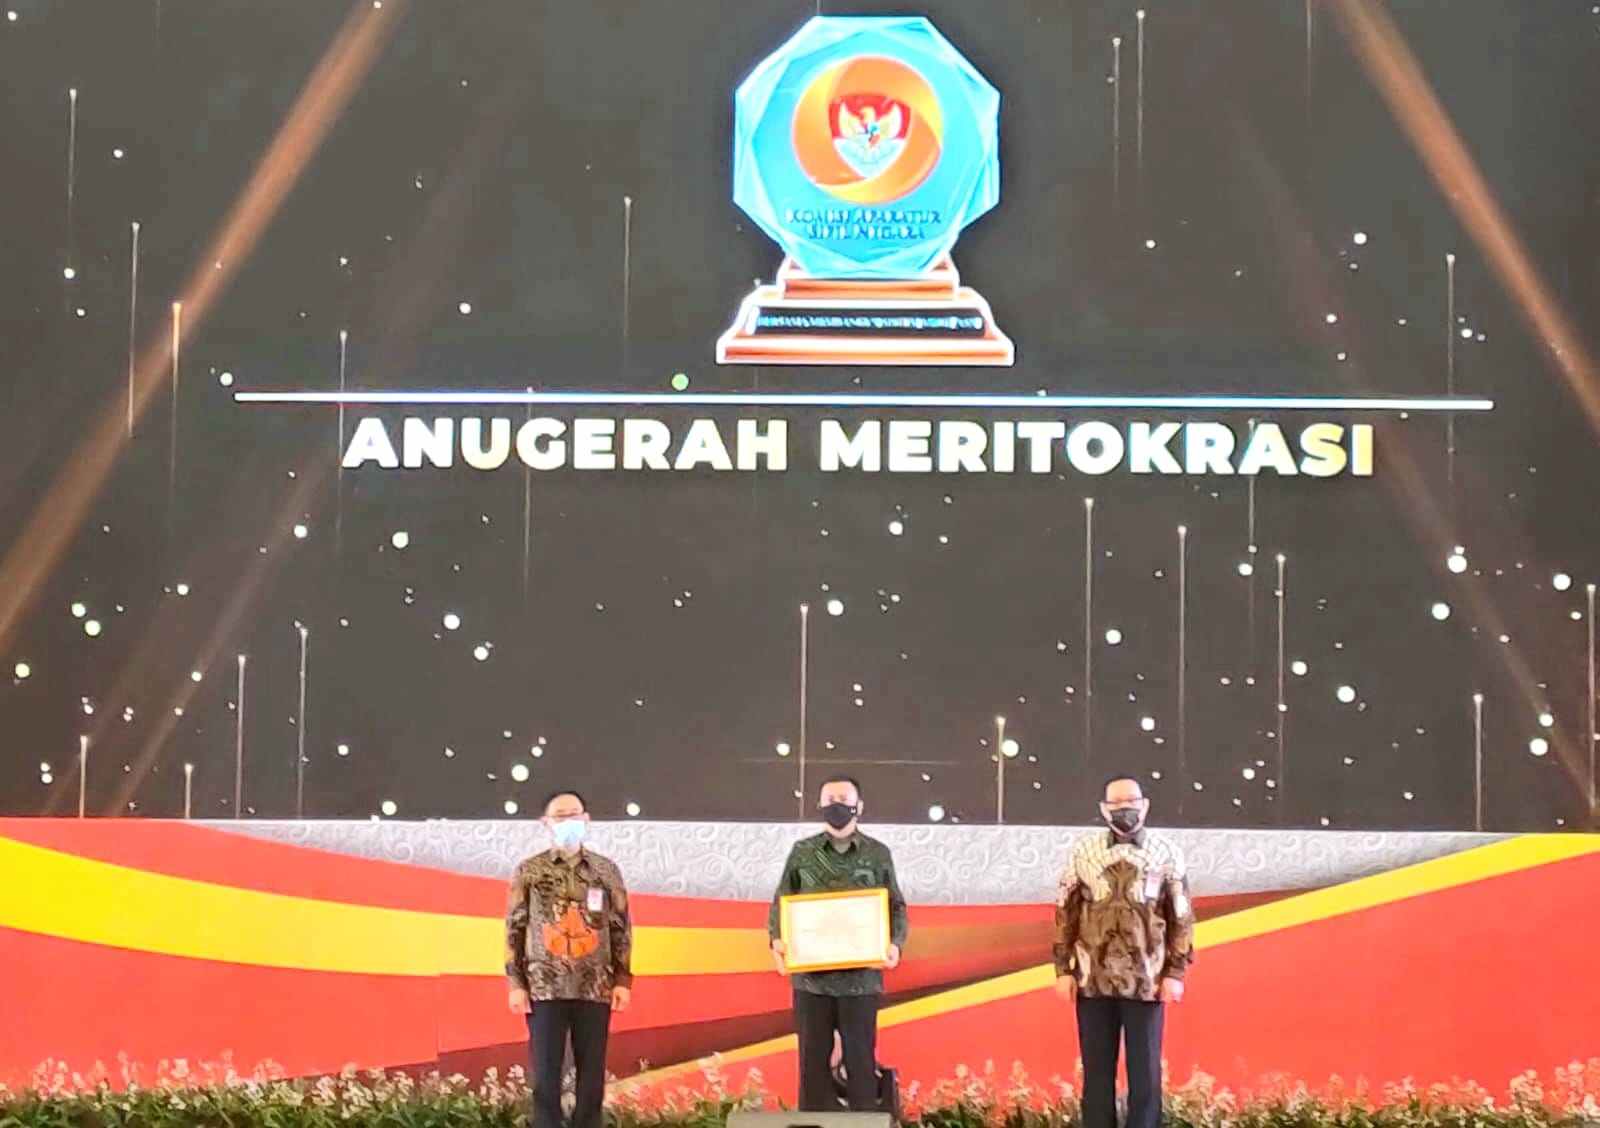 Bupati Basli Ali Bawa Selayar Raih Anugerah Meritokrasi 2021